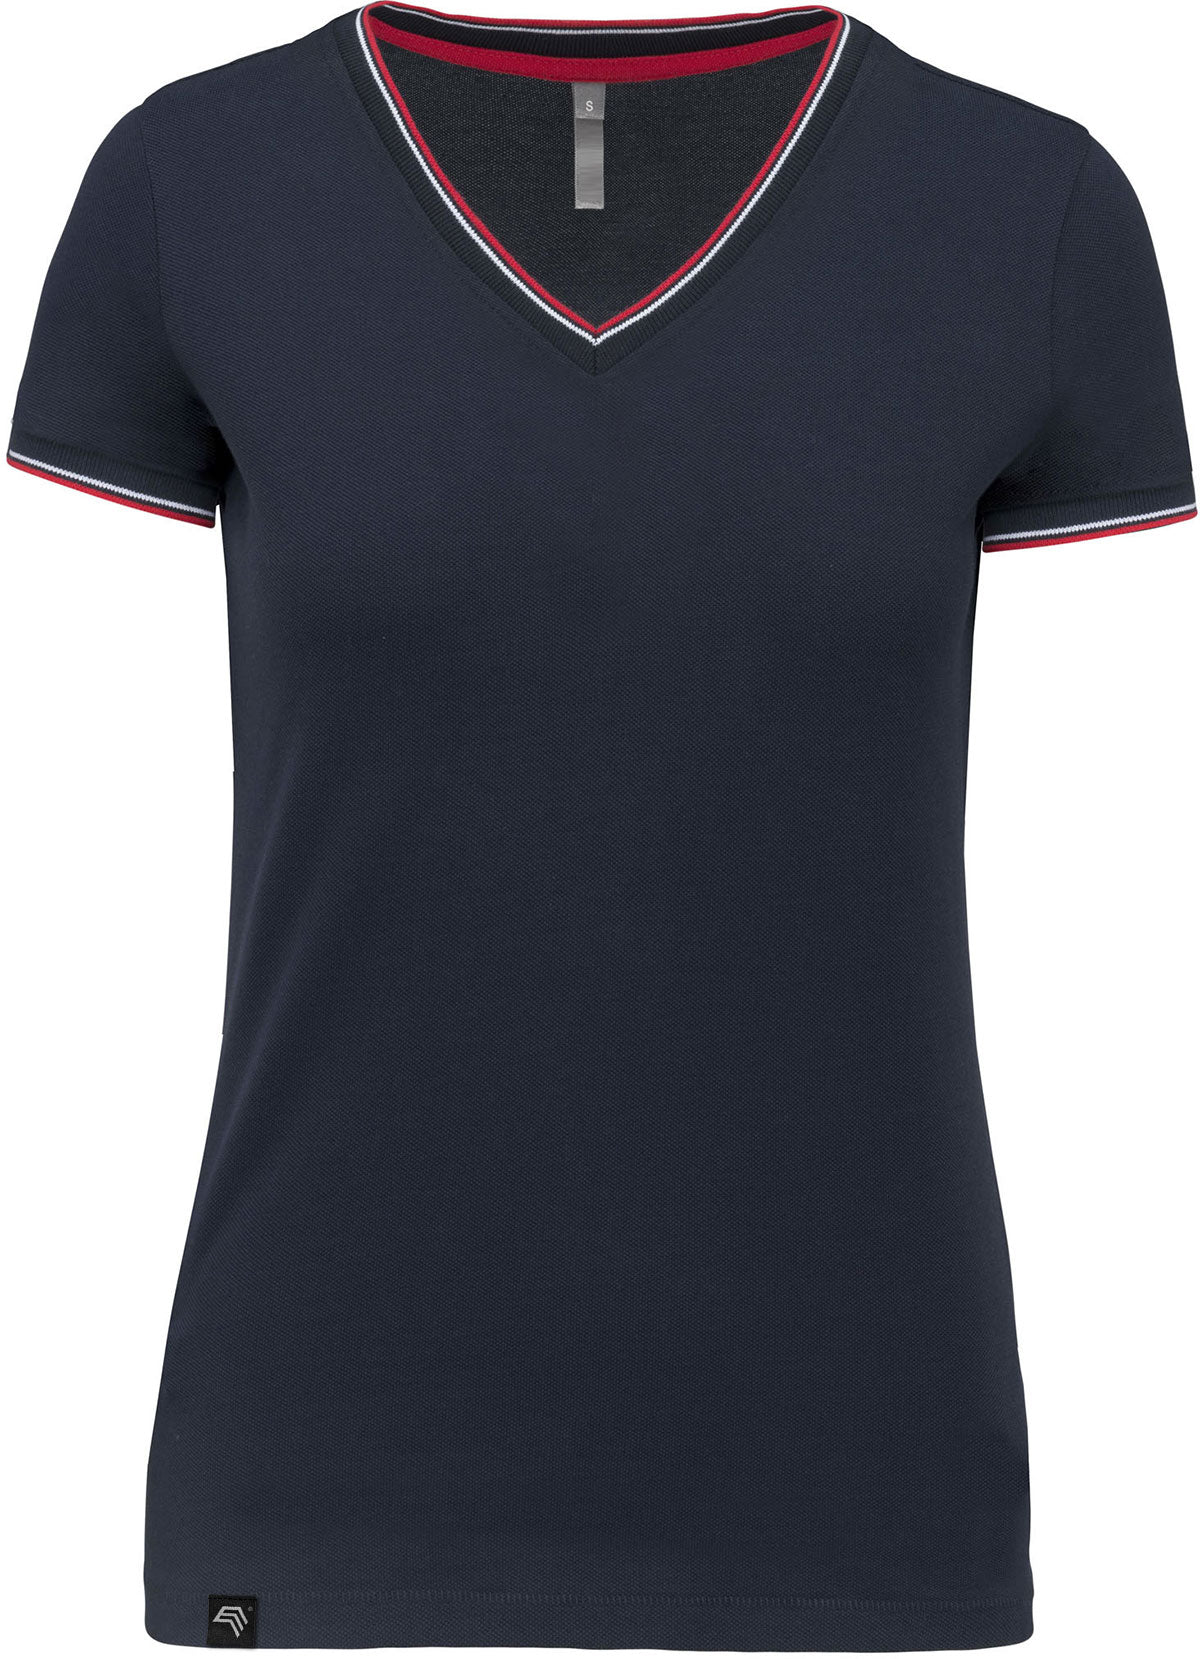 KRB K394 ― Damen Piqué-Trikot V-Neck T-Shirt - Navy Blau / Rot / Weiß